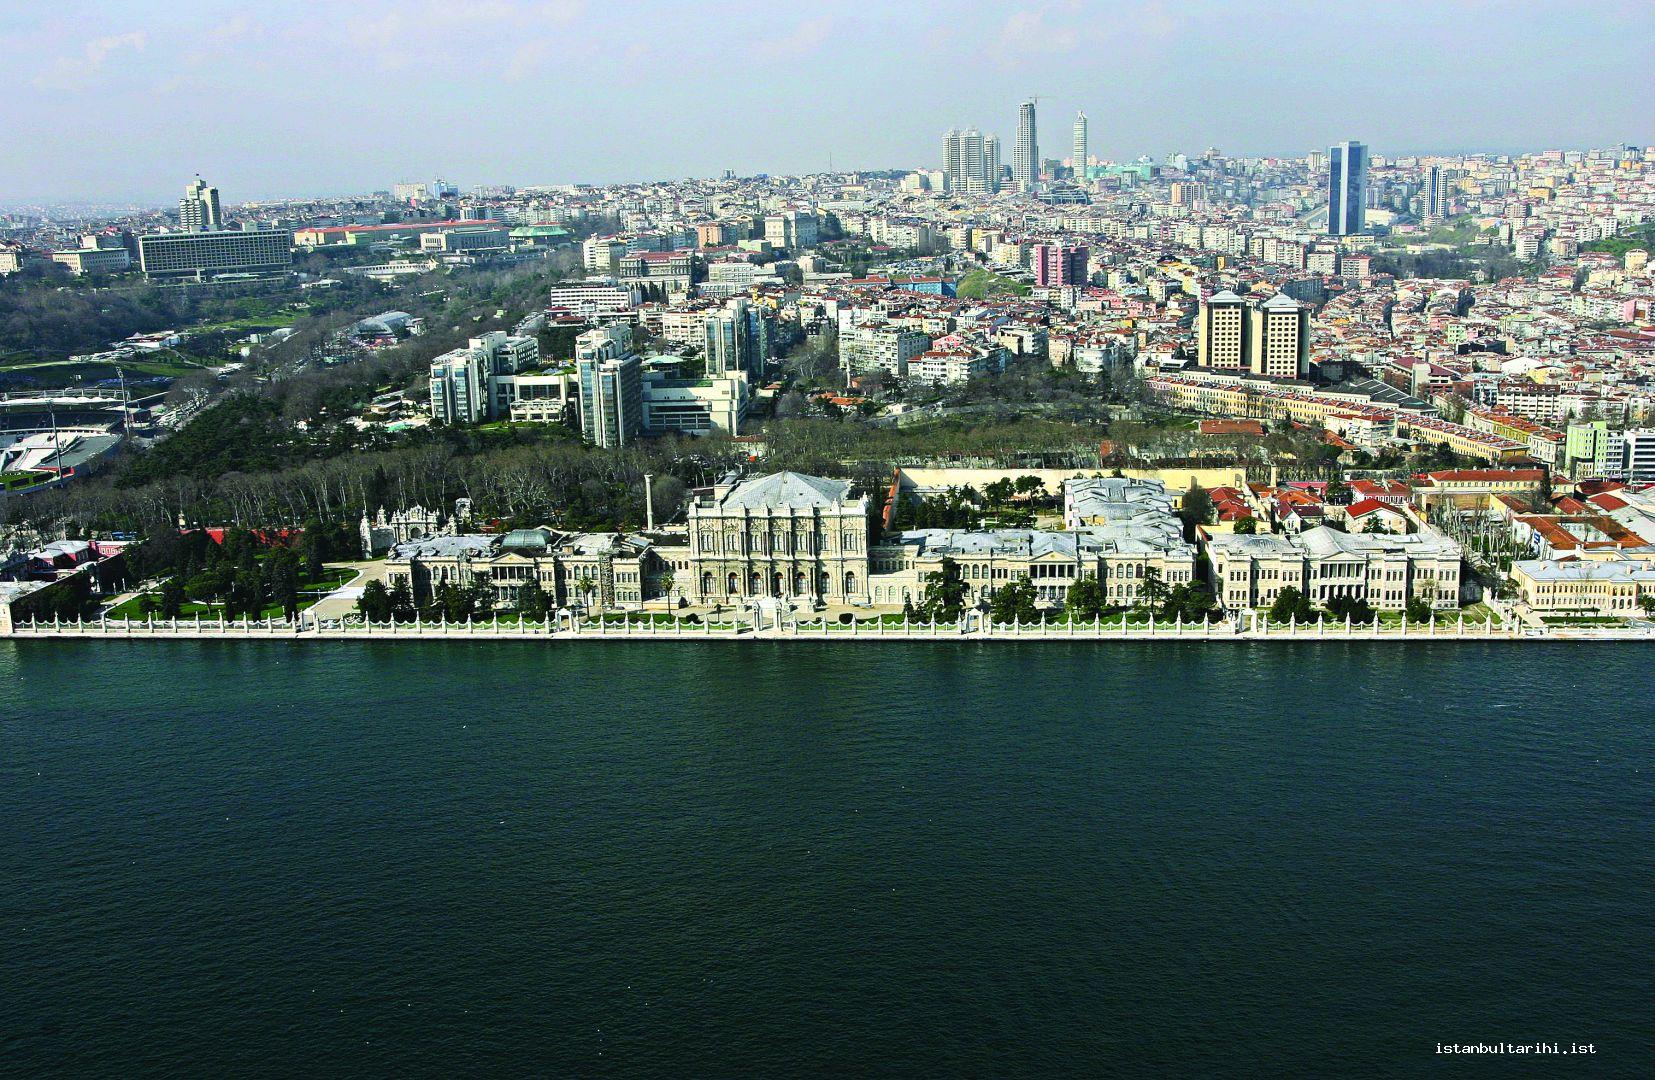 2- Dolmabahçe Palace    